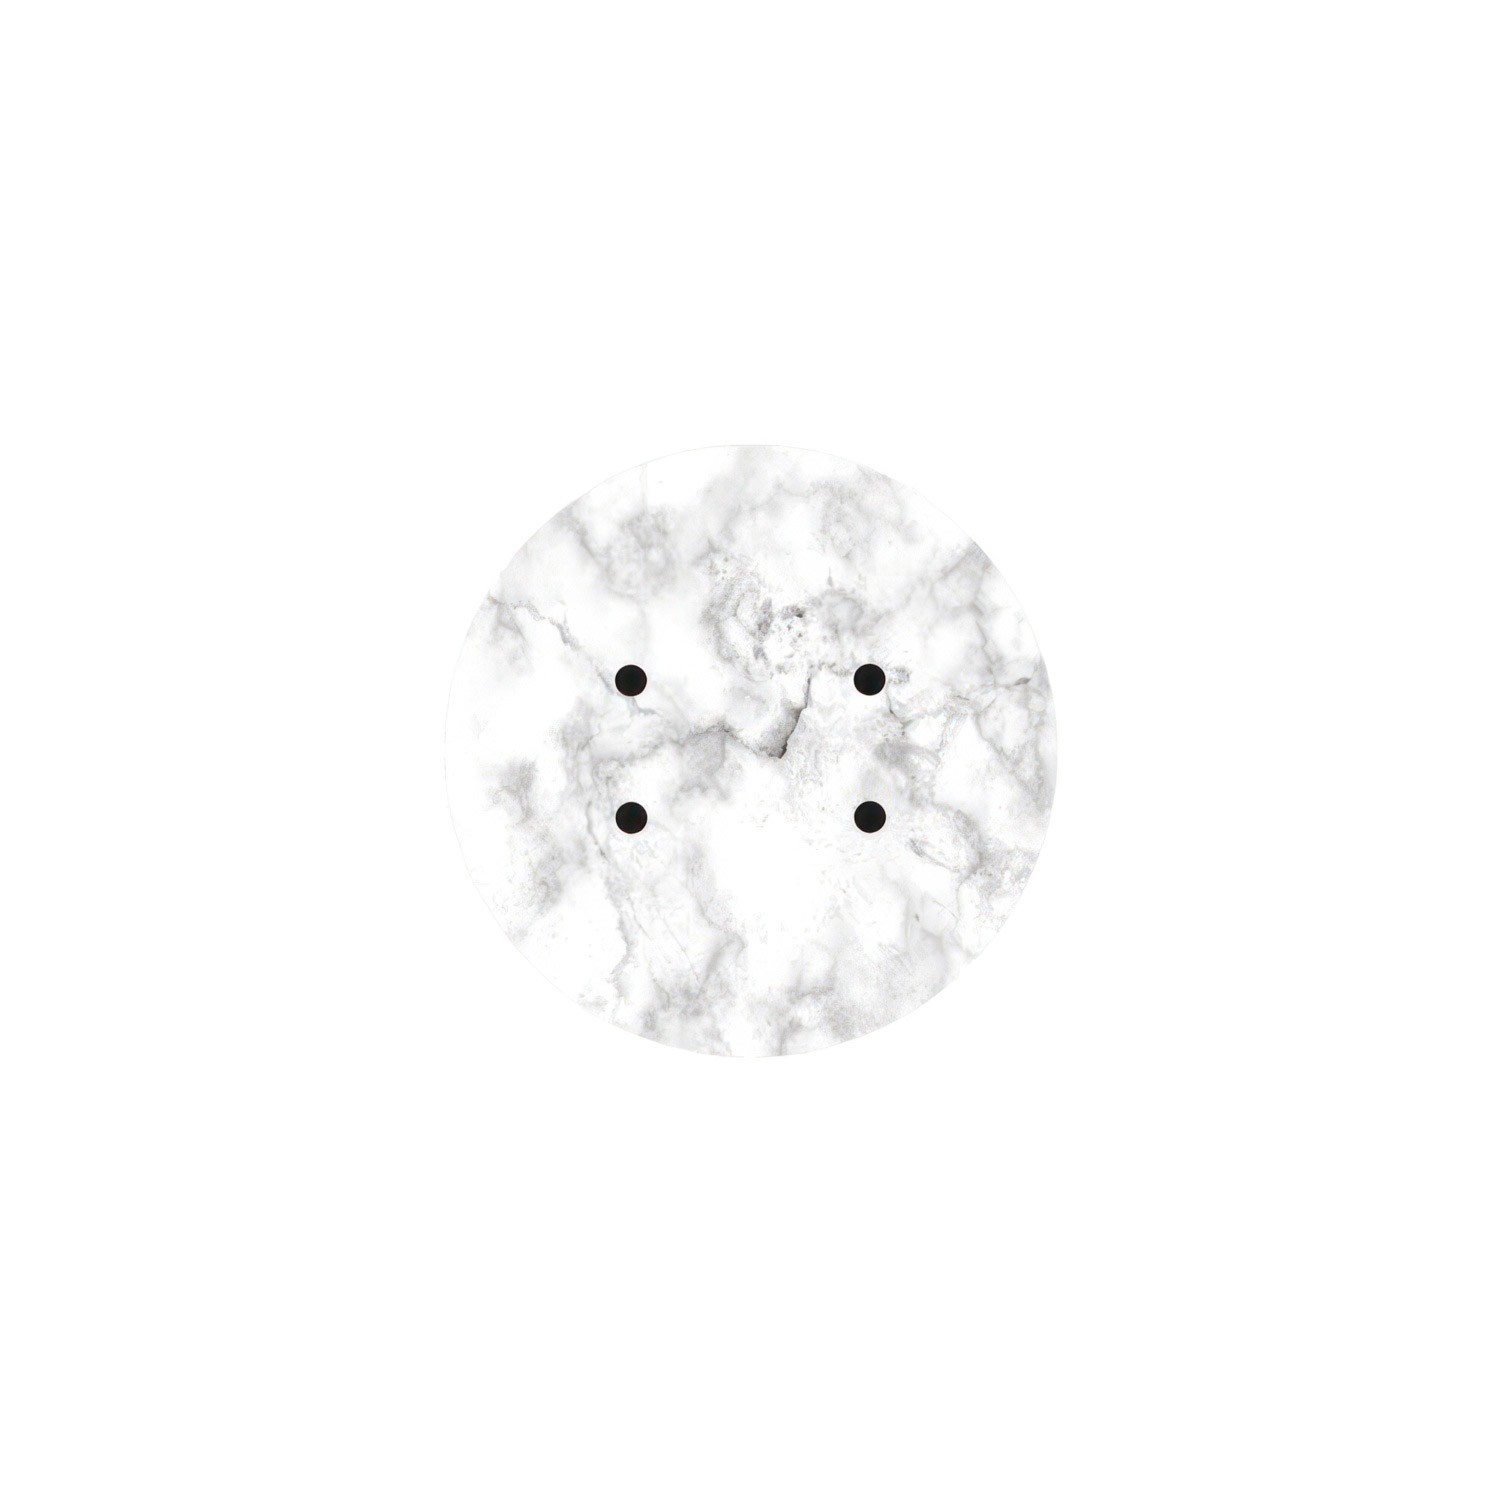 Kit rosetón Rose-One redondo, diámetro 200 mm con 4 agujeros y 4 agujeros laterales